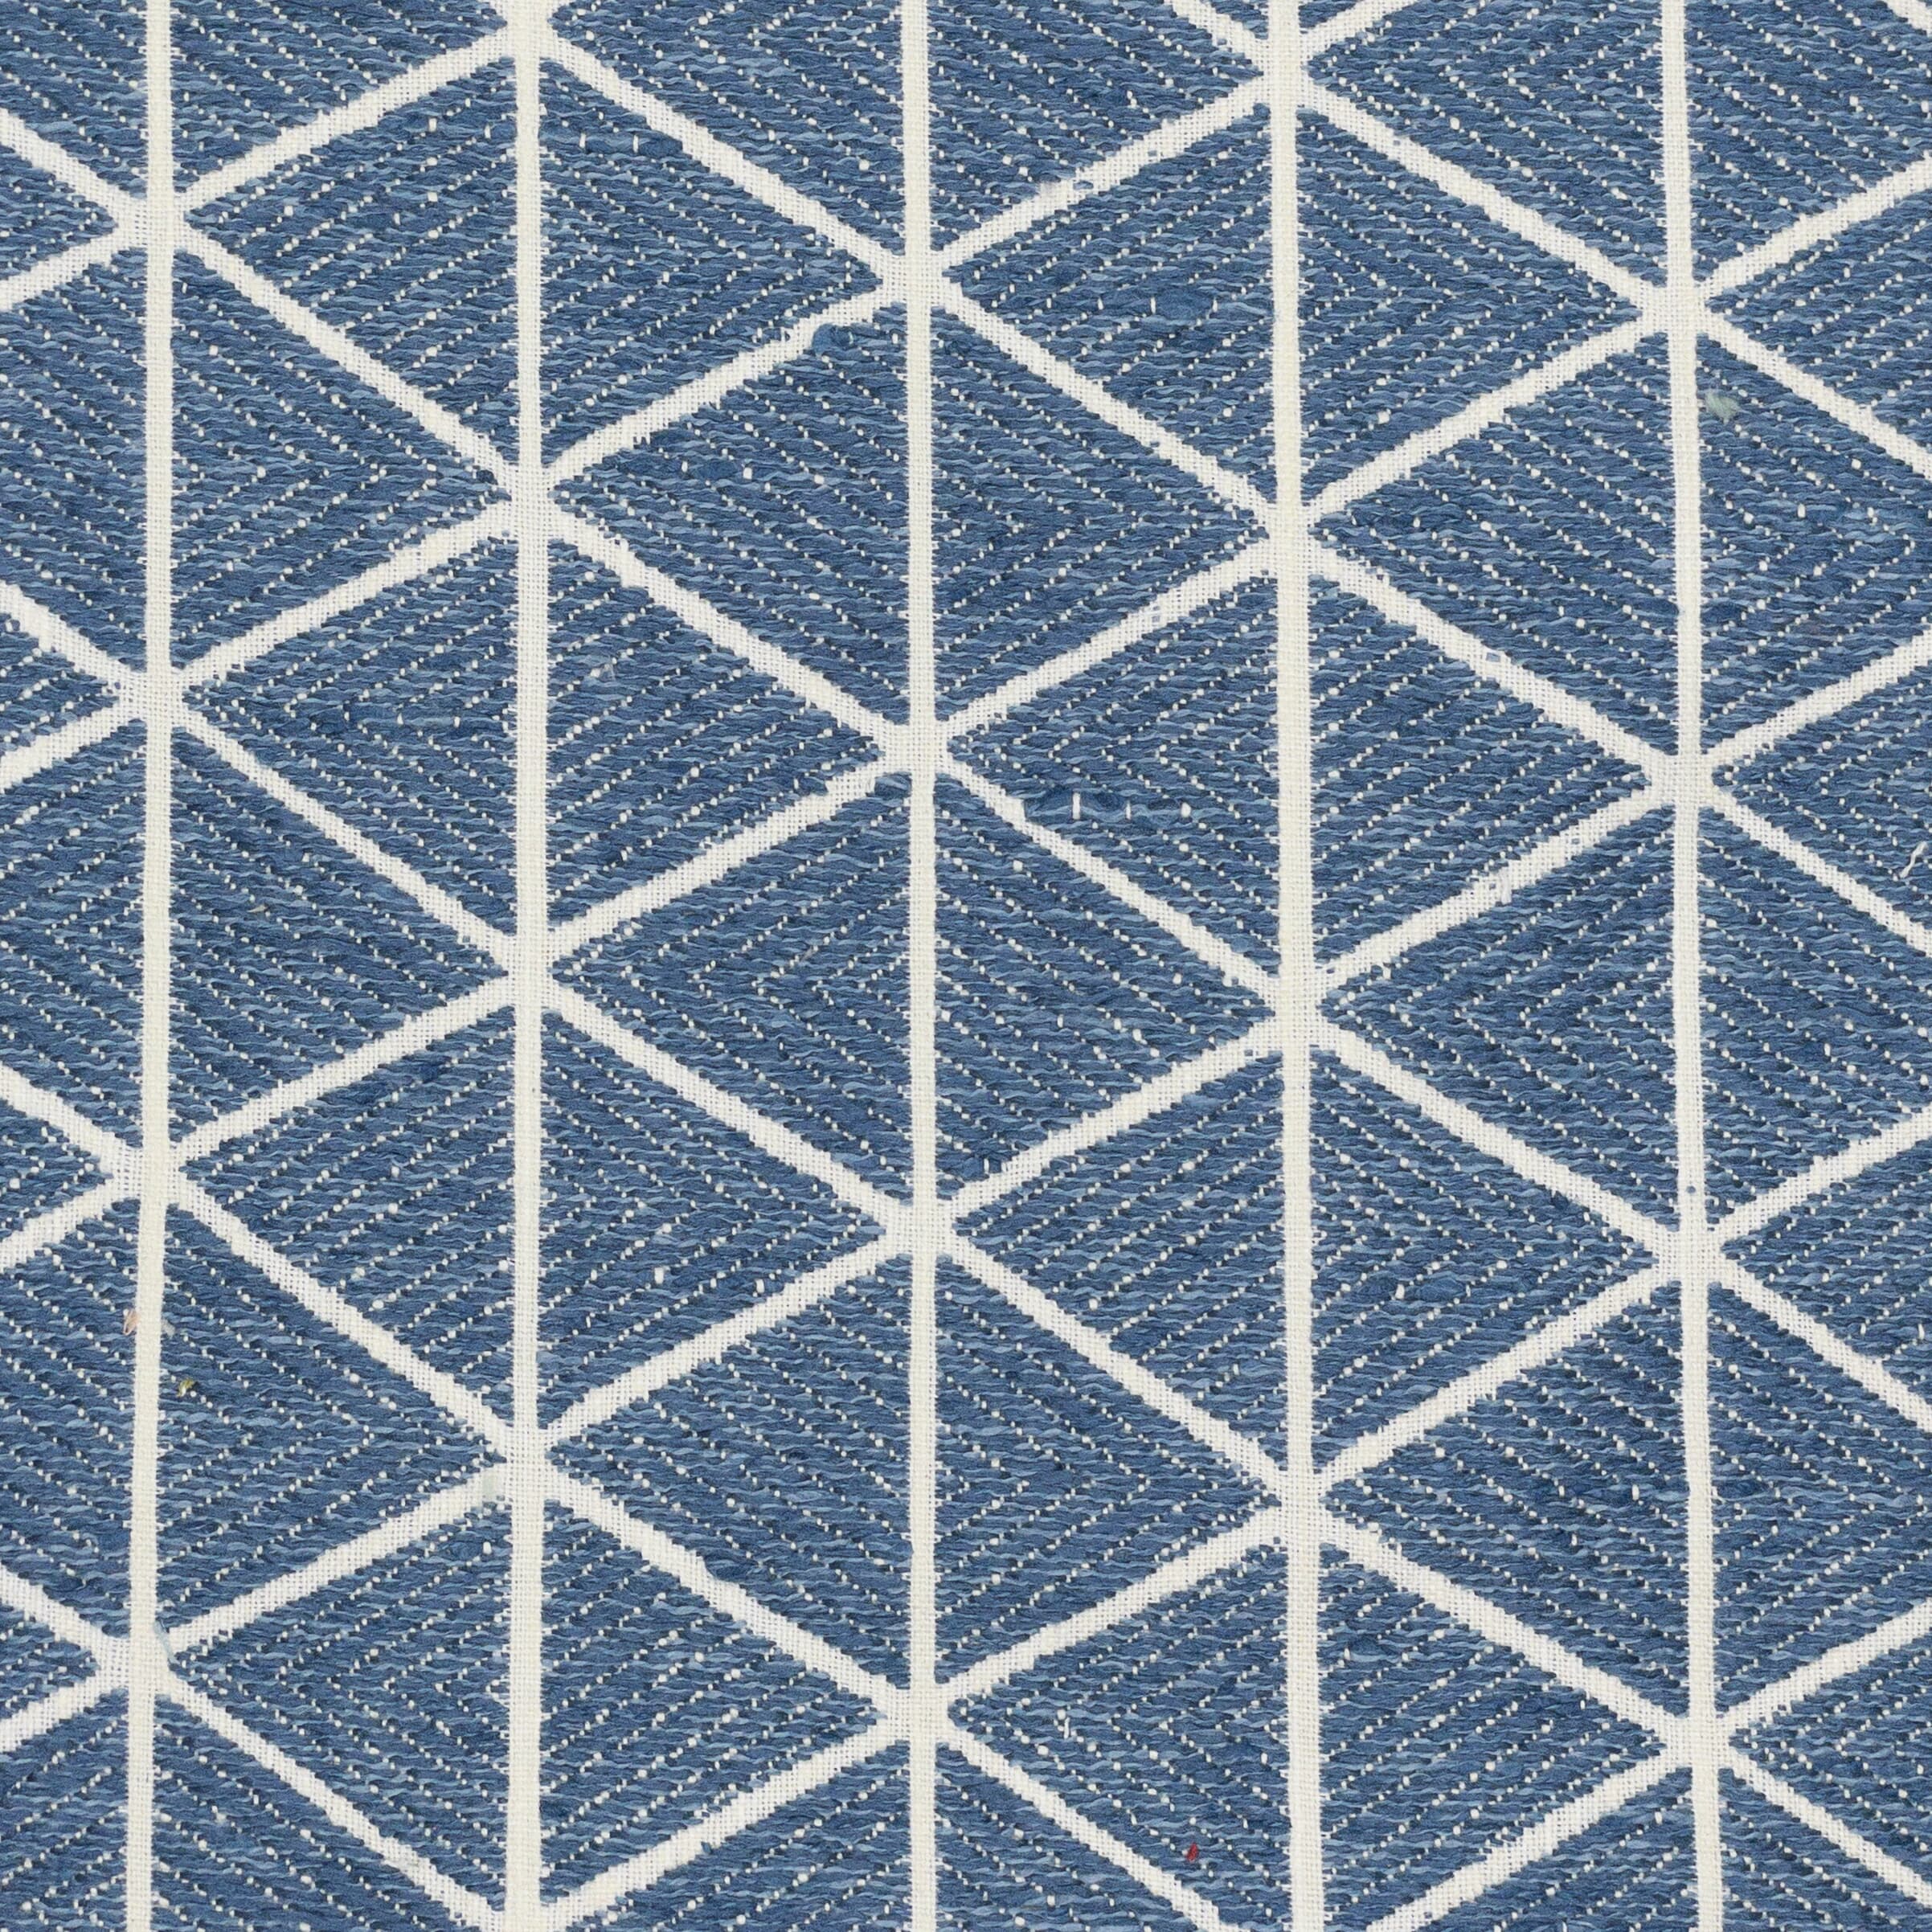 Piqua 1 Bluebird by Stout Fabric